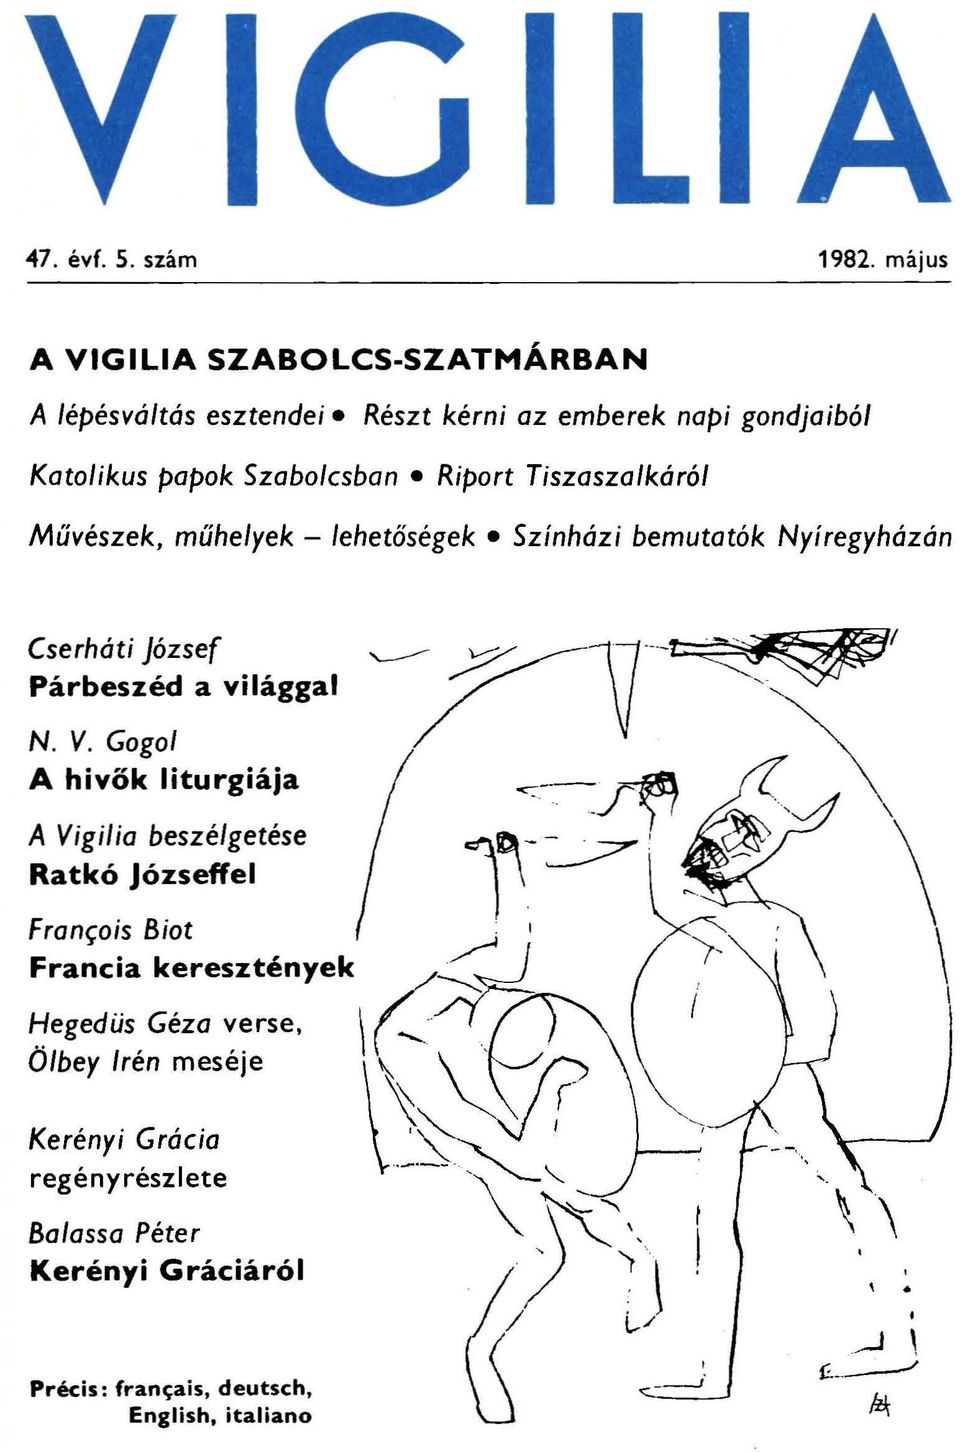 Színházi bemutatók Nyíregyházán Cserháti józsef ~ ~17 _ -~1 Párbeszéd a világgal / V ~ N. V. Gogol A hivők liturgiája ~--f~ _ " \ \ A Vigilia beszélgetése l~-.